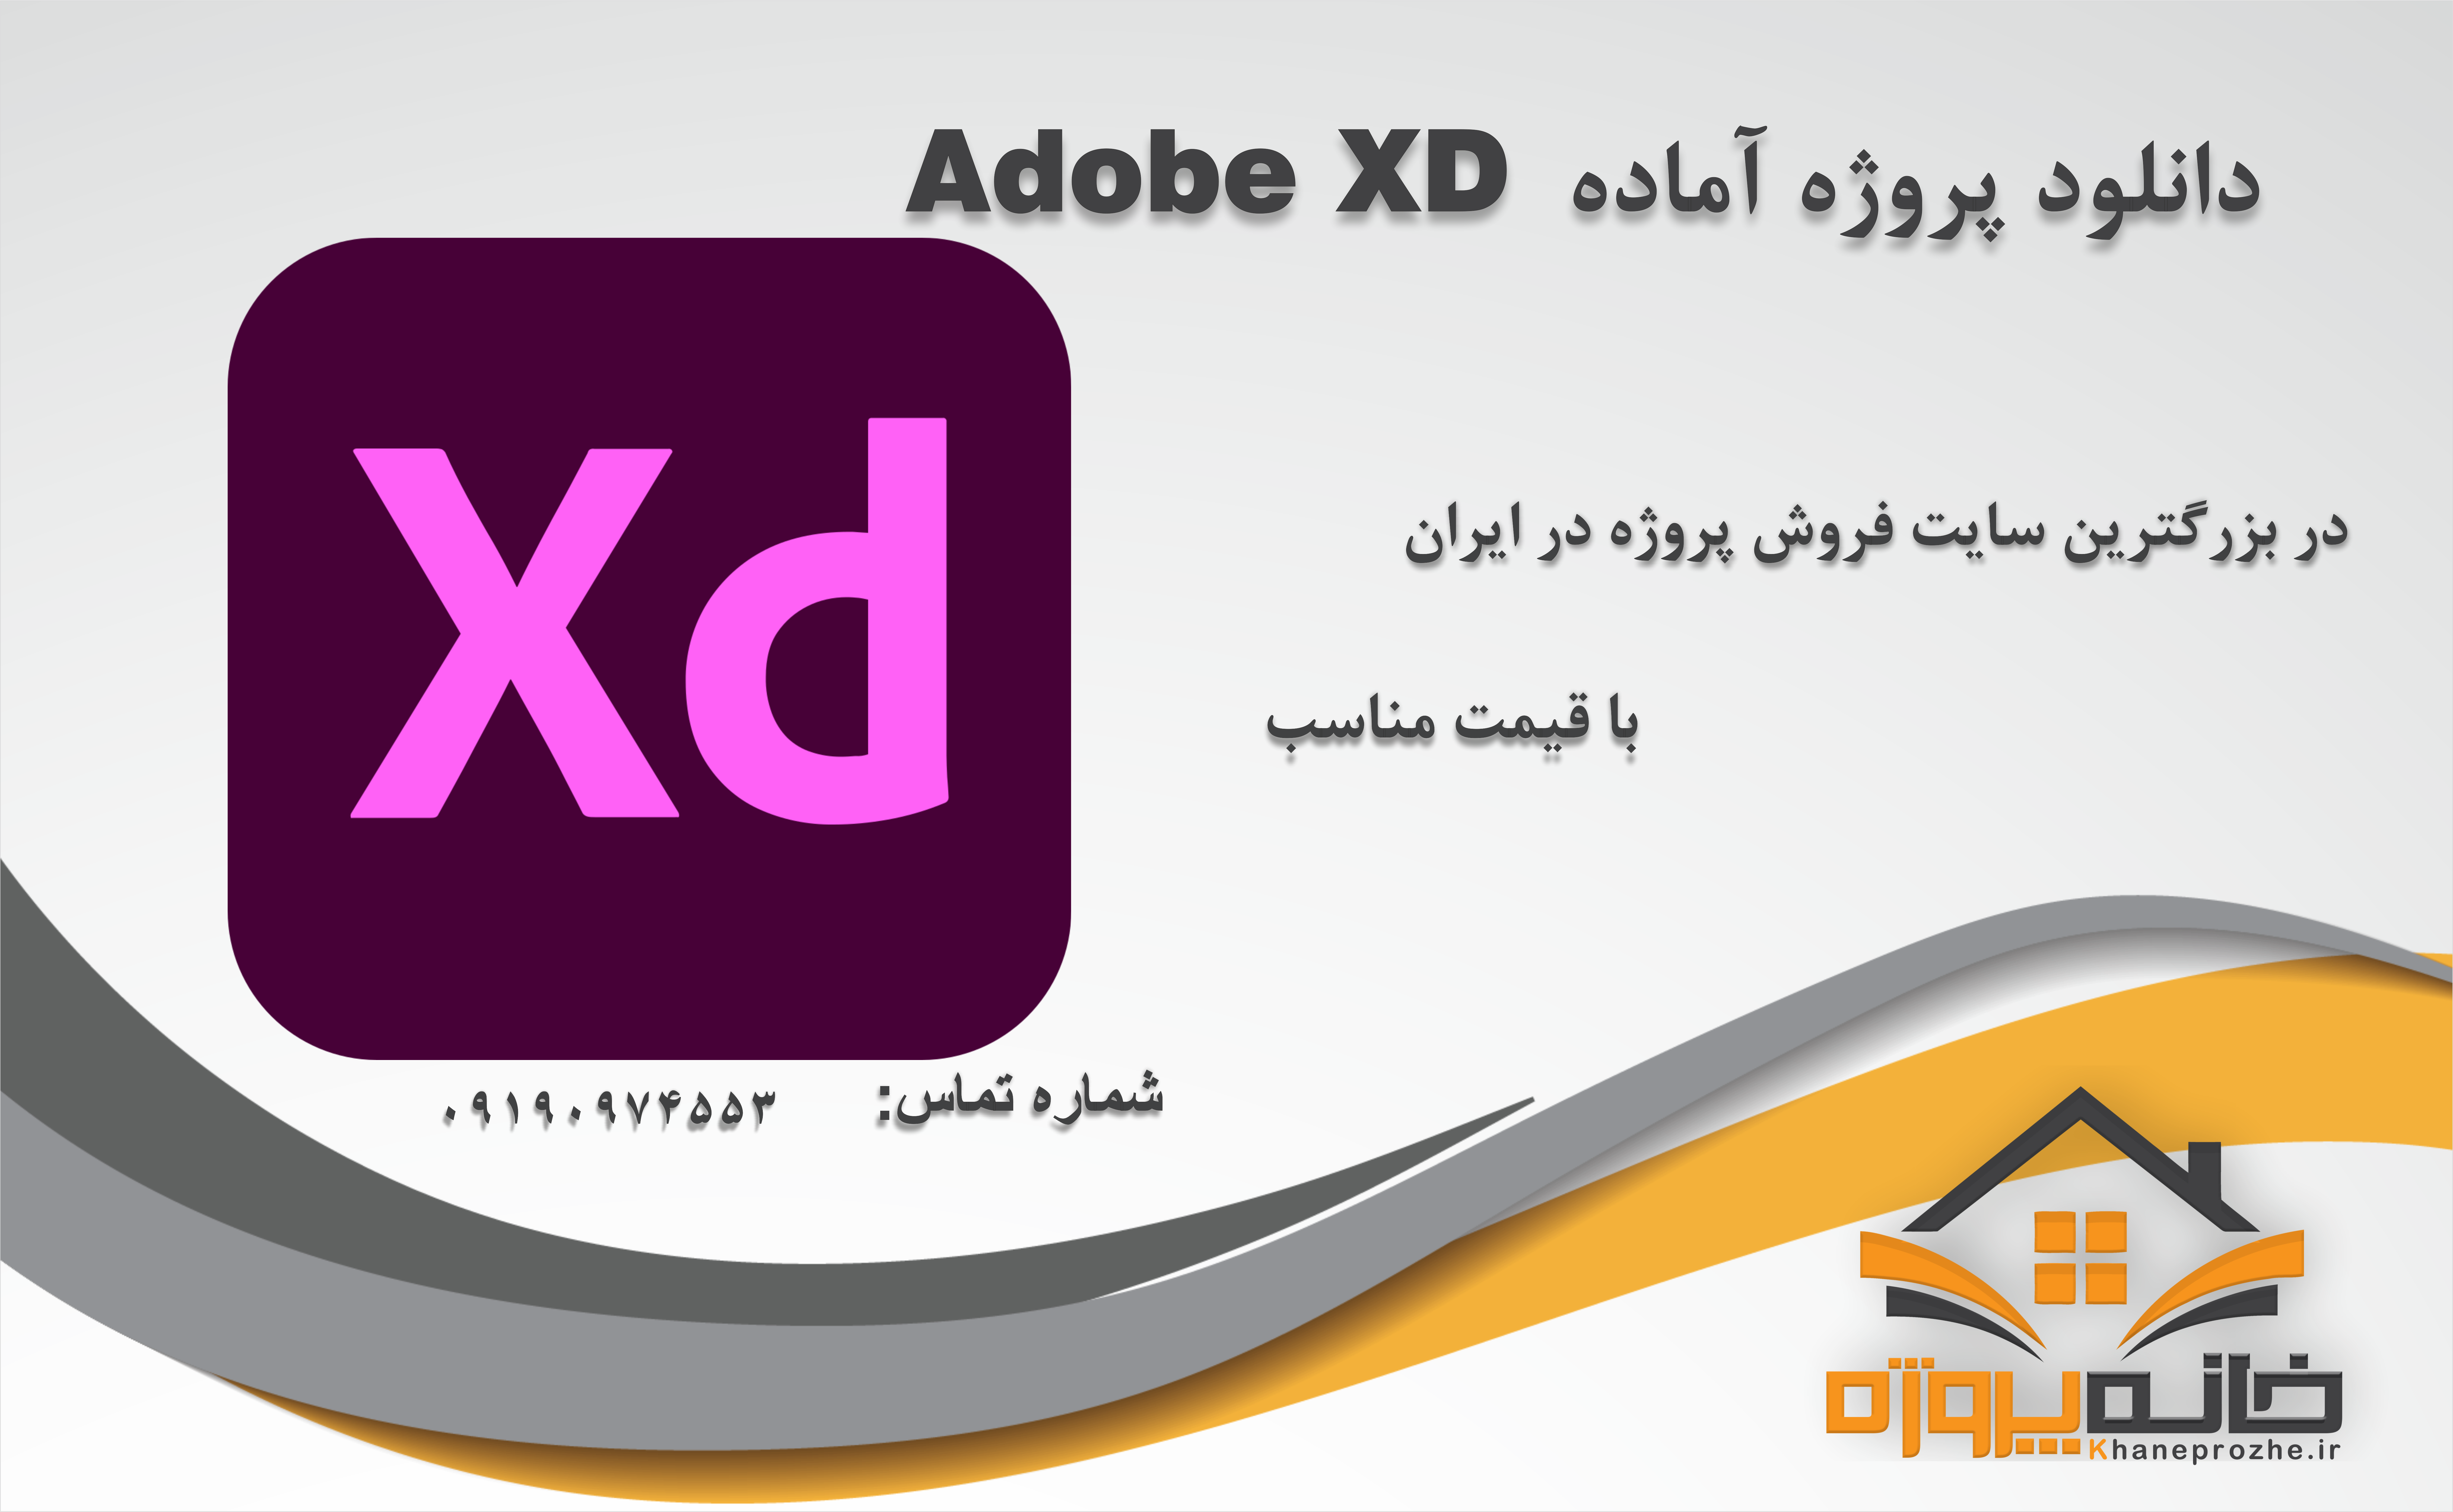 پروژه های آماده Adobe XD